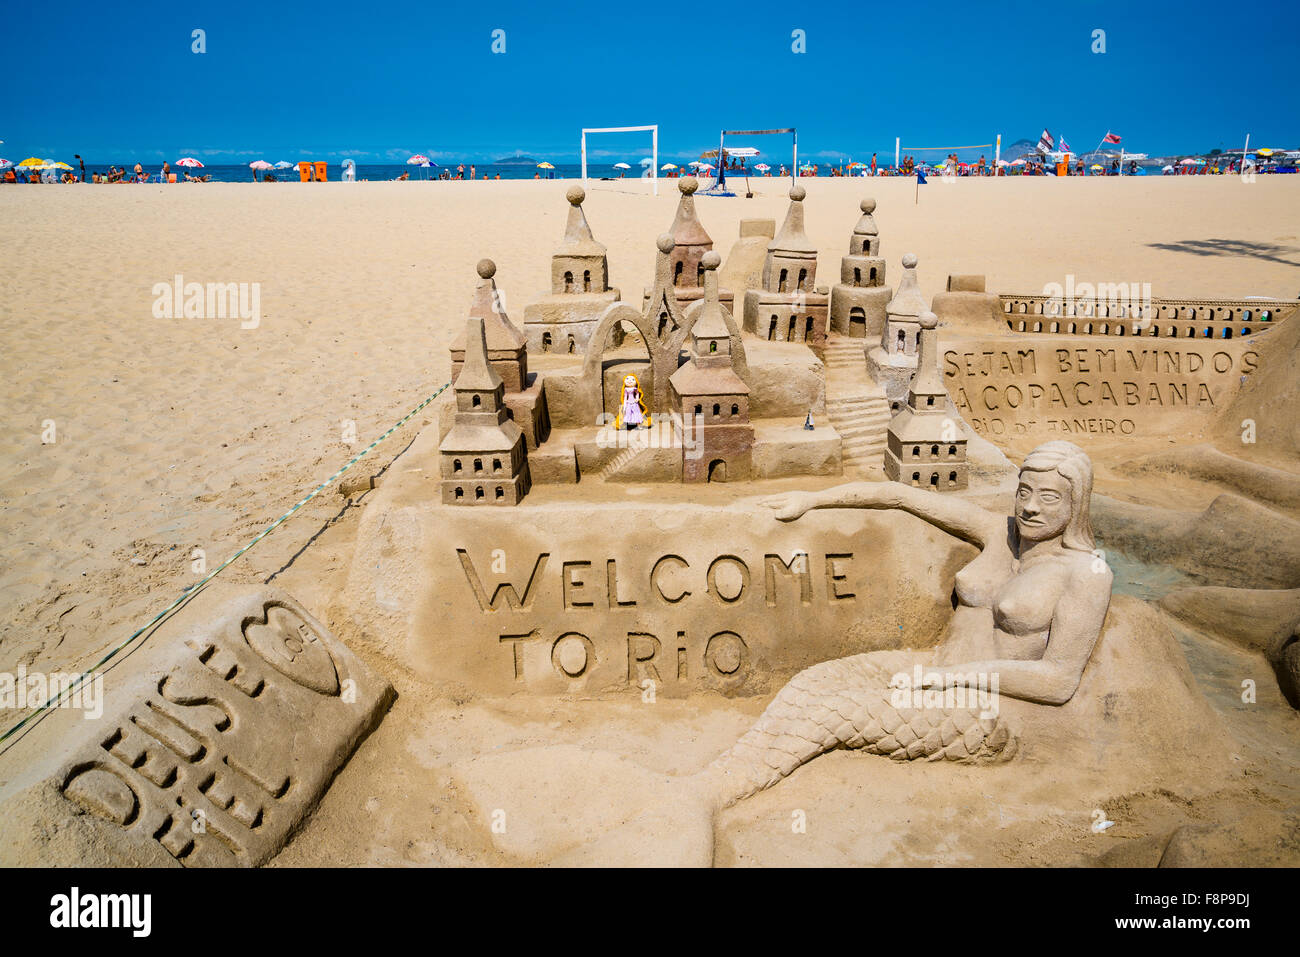 Willkommen Sie bei Rio Sandburg, Strand der Copacabana, Rio De Janeiro, Brasilien Stockfoto